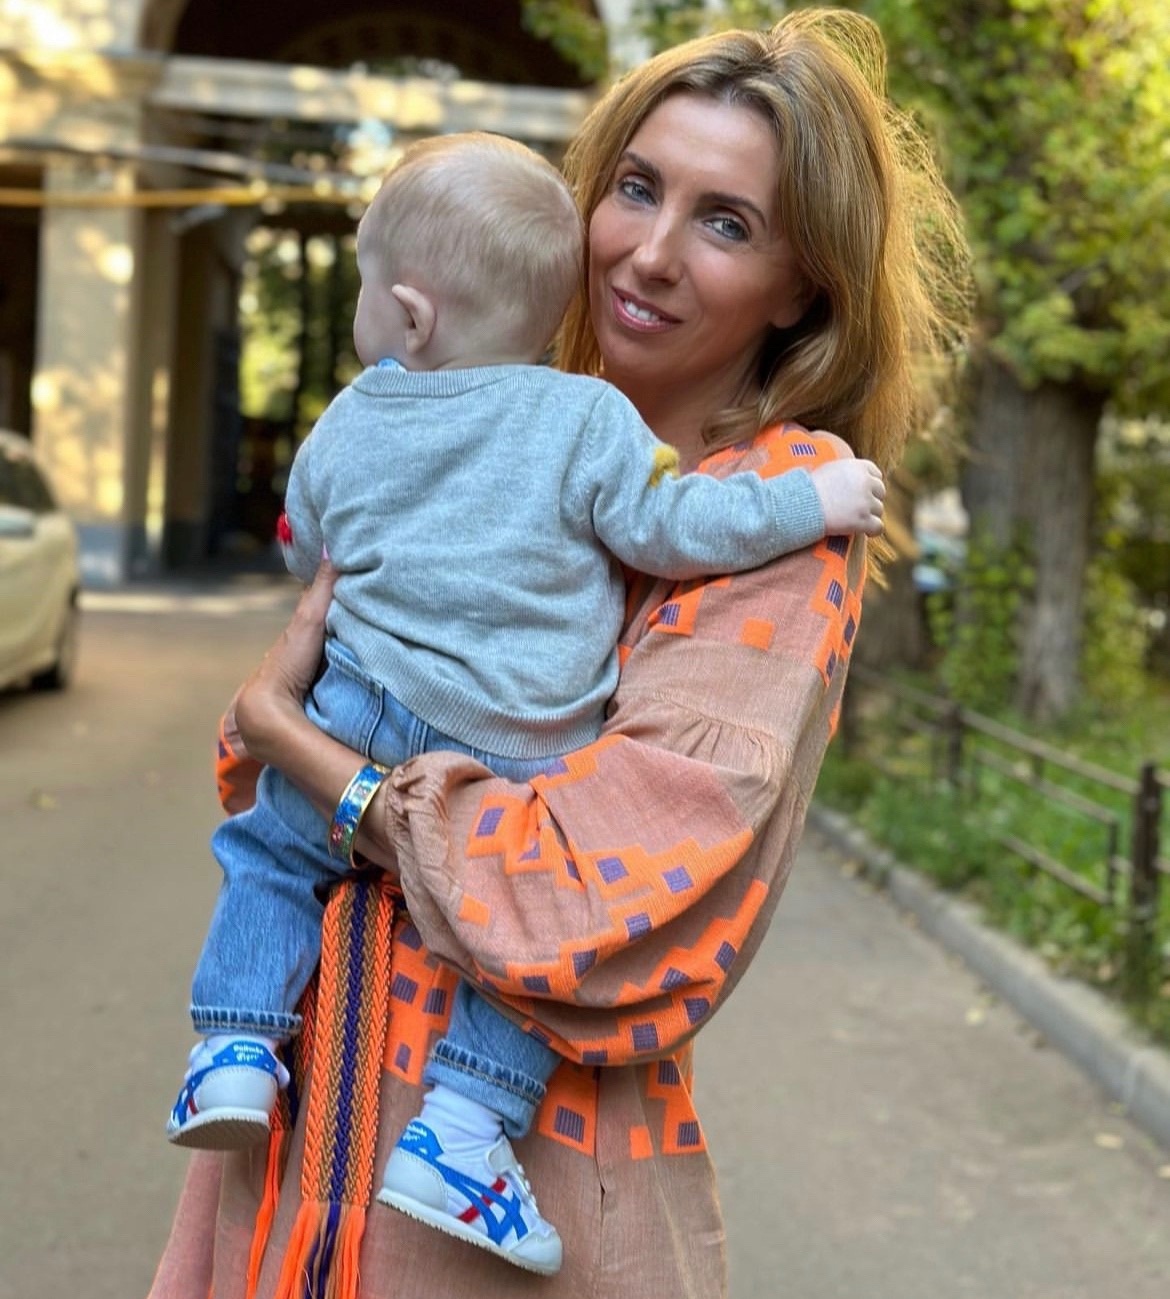 "Не напрягайтесь": Светлана Бондарчук ответила на критику своего позднего материнства
